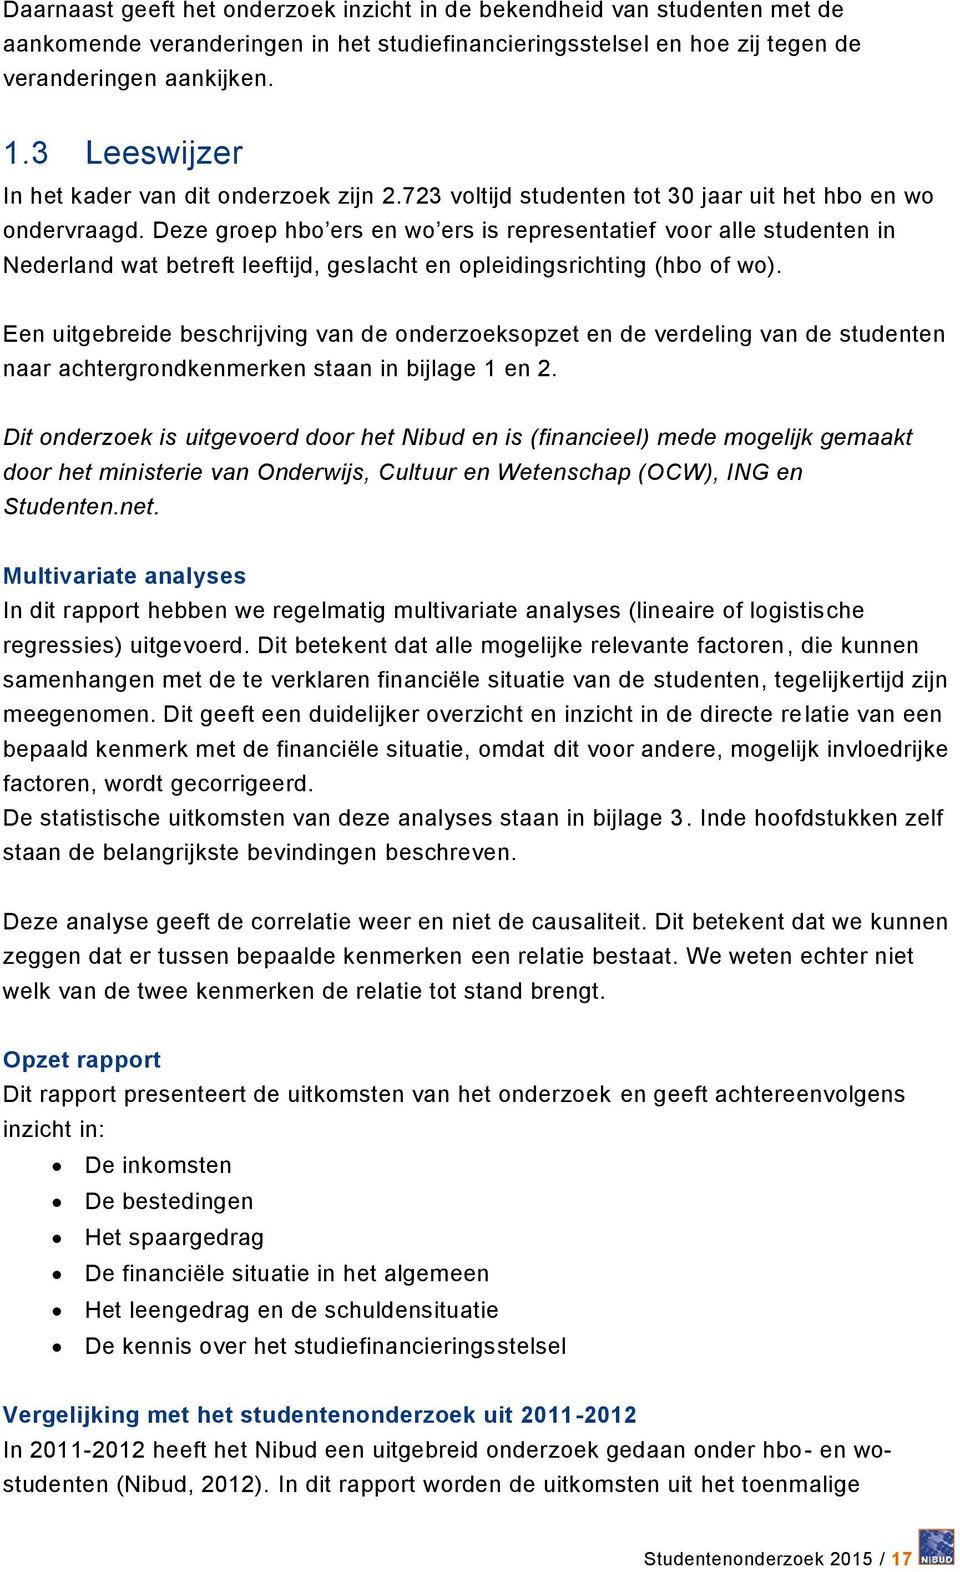 Deze groep hbo ers en wo ers is representatief voor alle studenten in Nederland wat betreft leeftijd, geslacht en opleidingsrichting (hbo of wo).